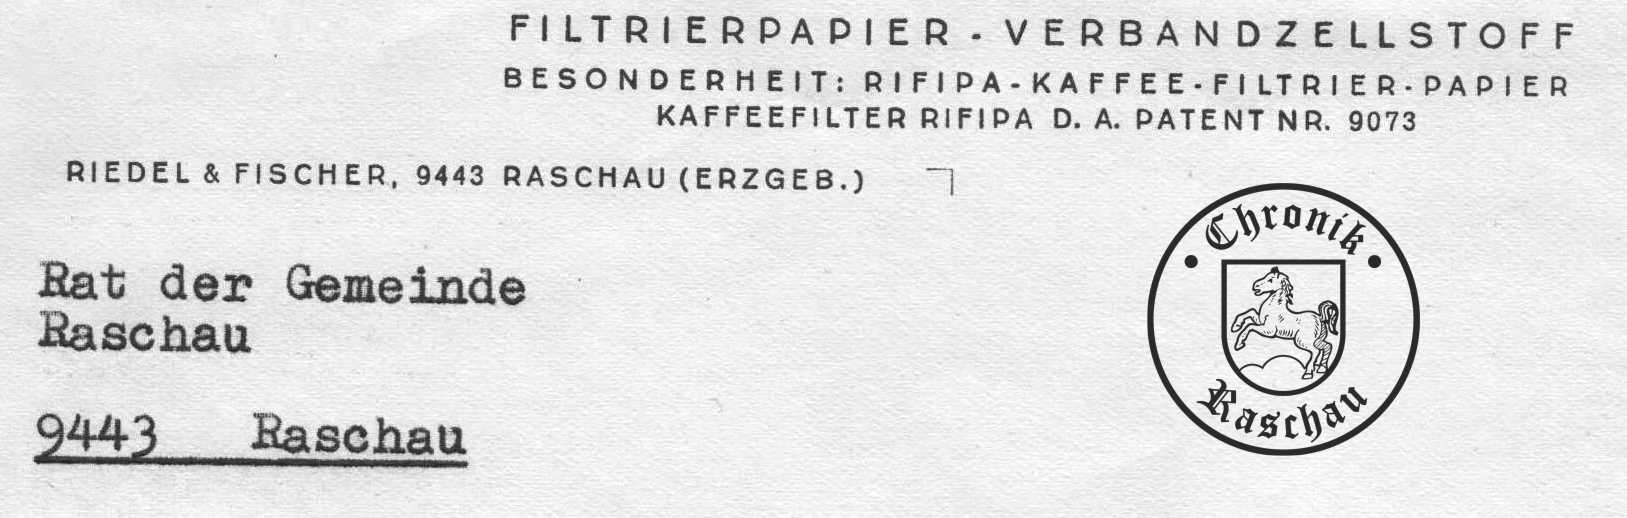 1971 Fa Riedel und Fischer Filtertten